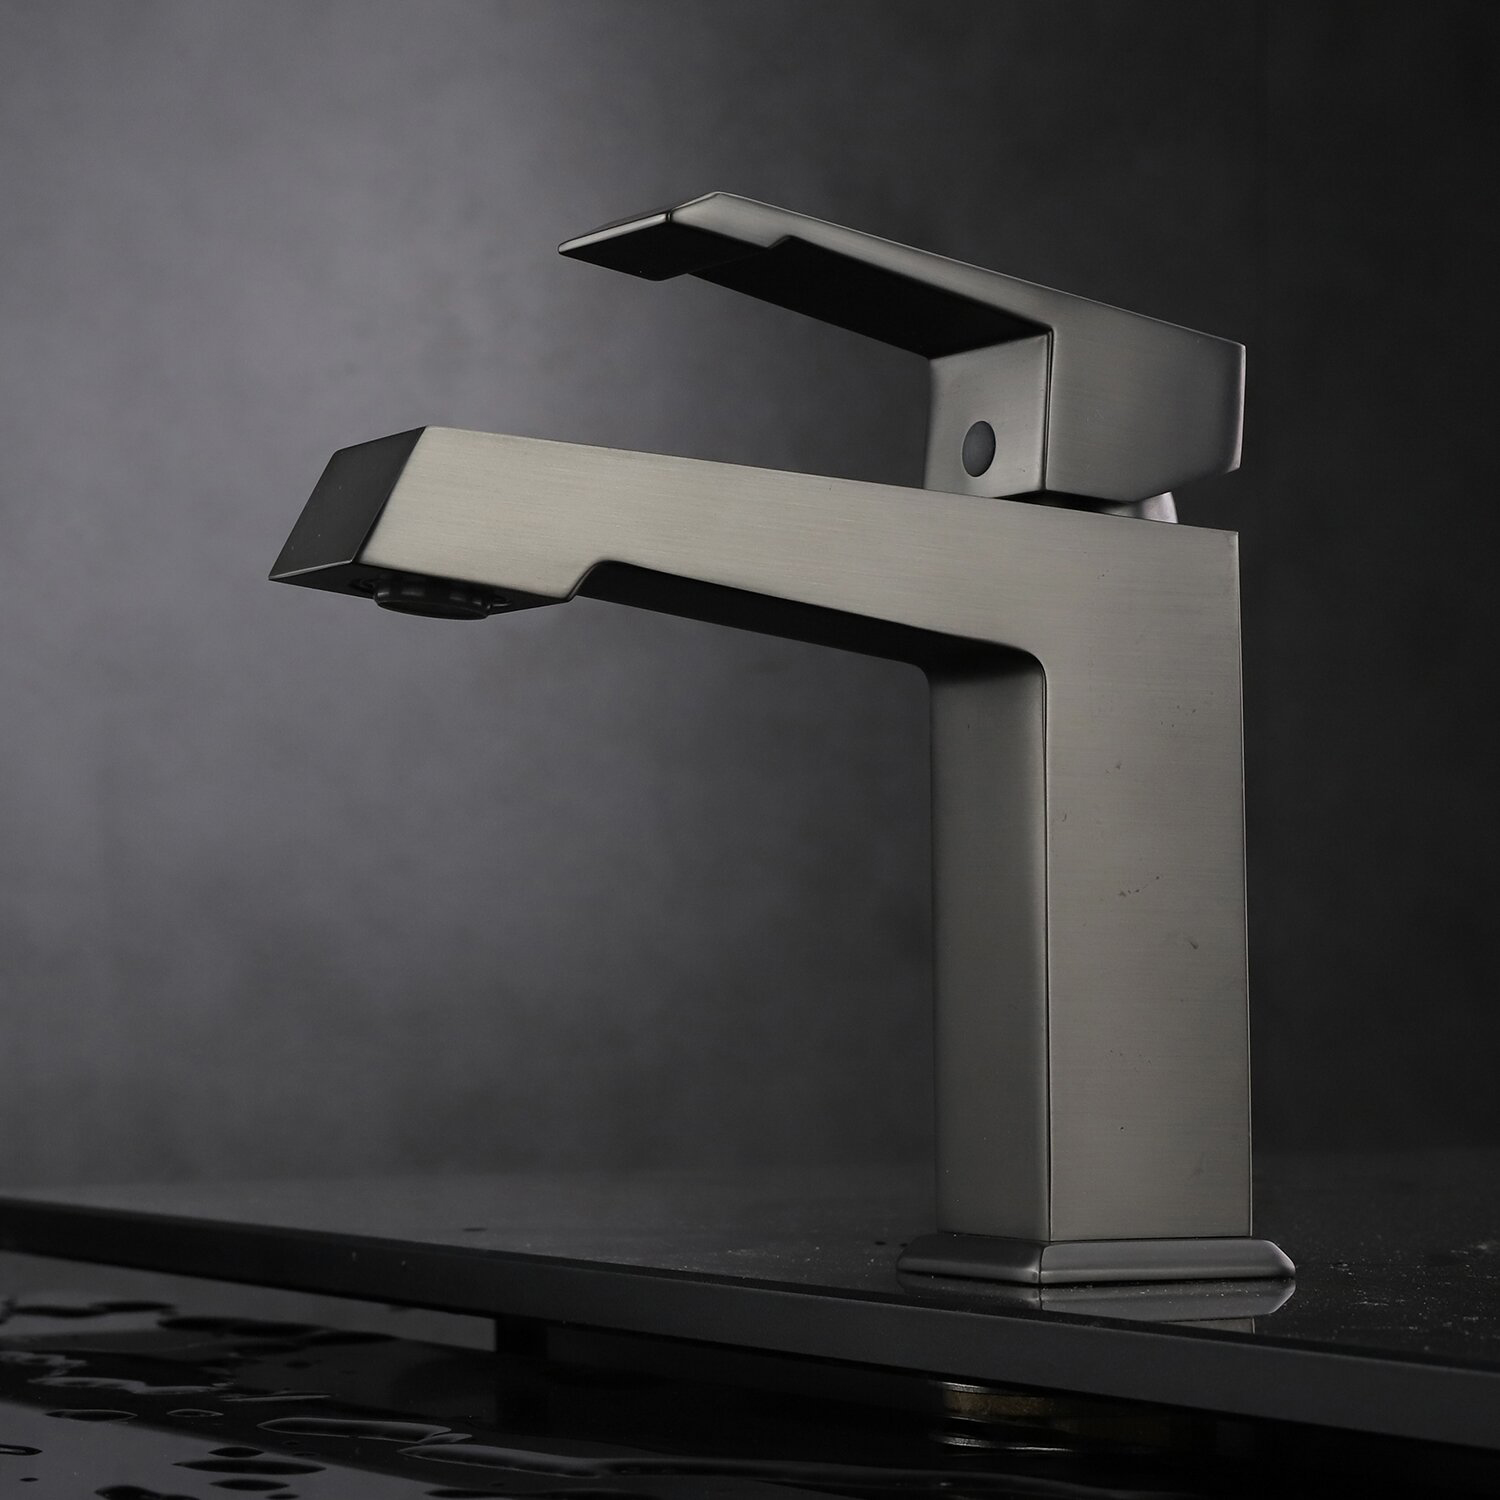 Hochwertiges Design, Messing-Metall-Chrom-Finish, für WC, Badezimmer, Waschbecken, Waschbecken